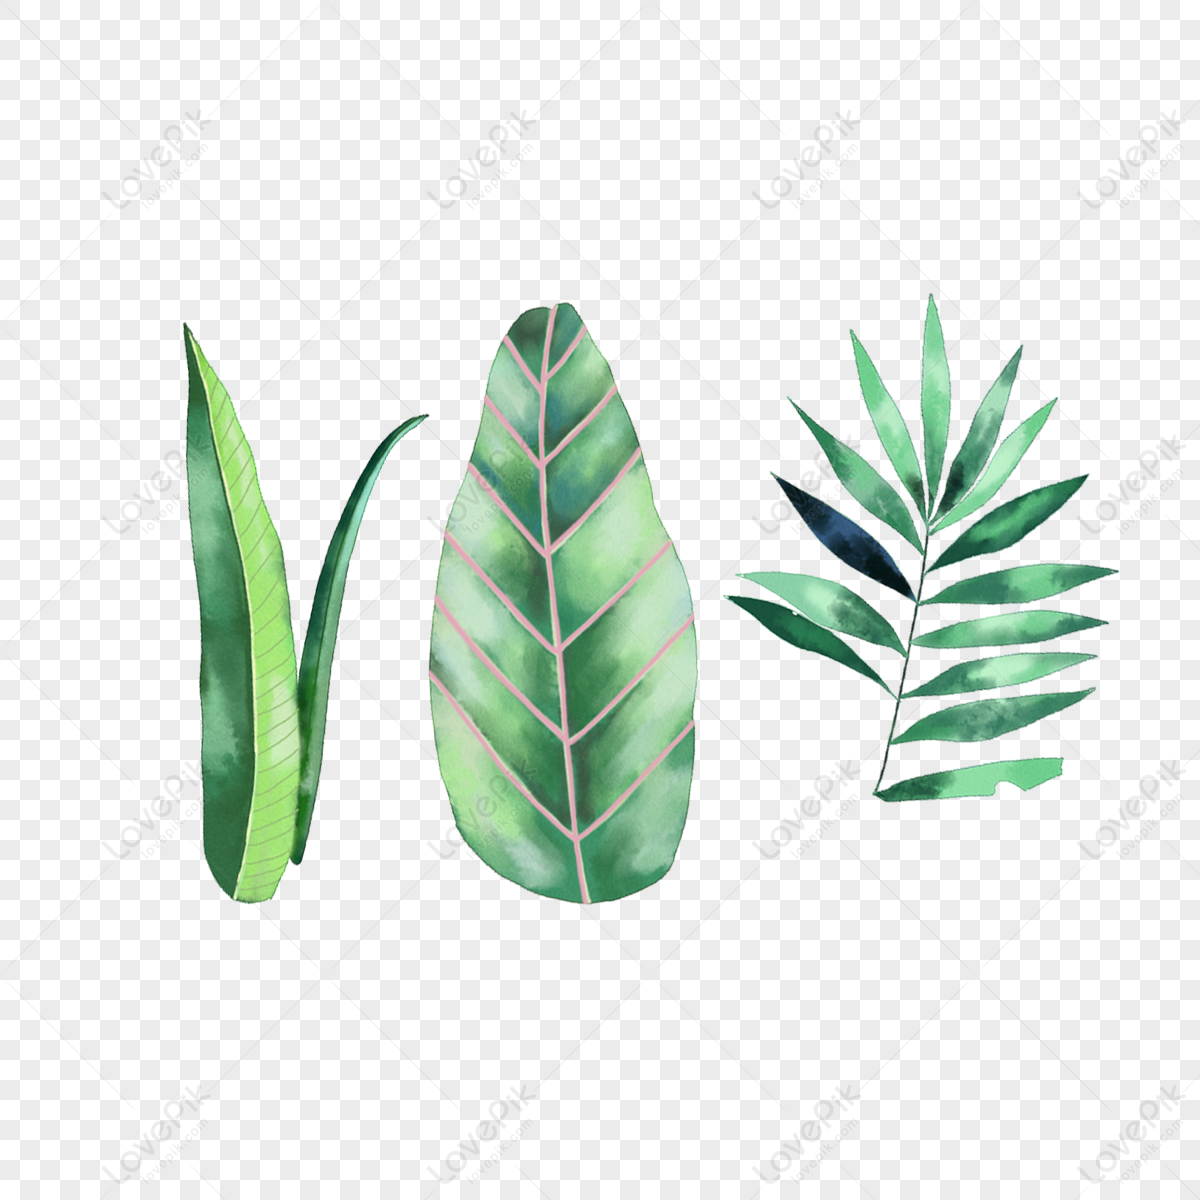 Hình ảnh Vegetation Of The Leaf PNG Miễn Phí Tải Về - Lovepik